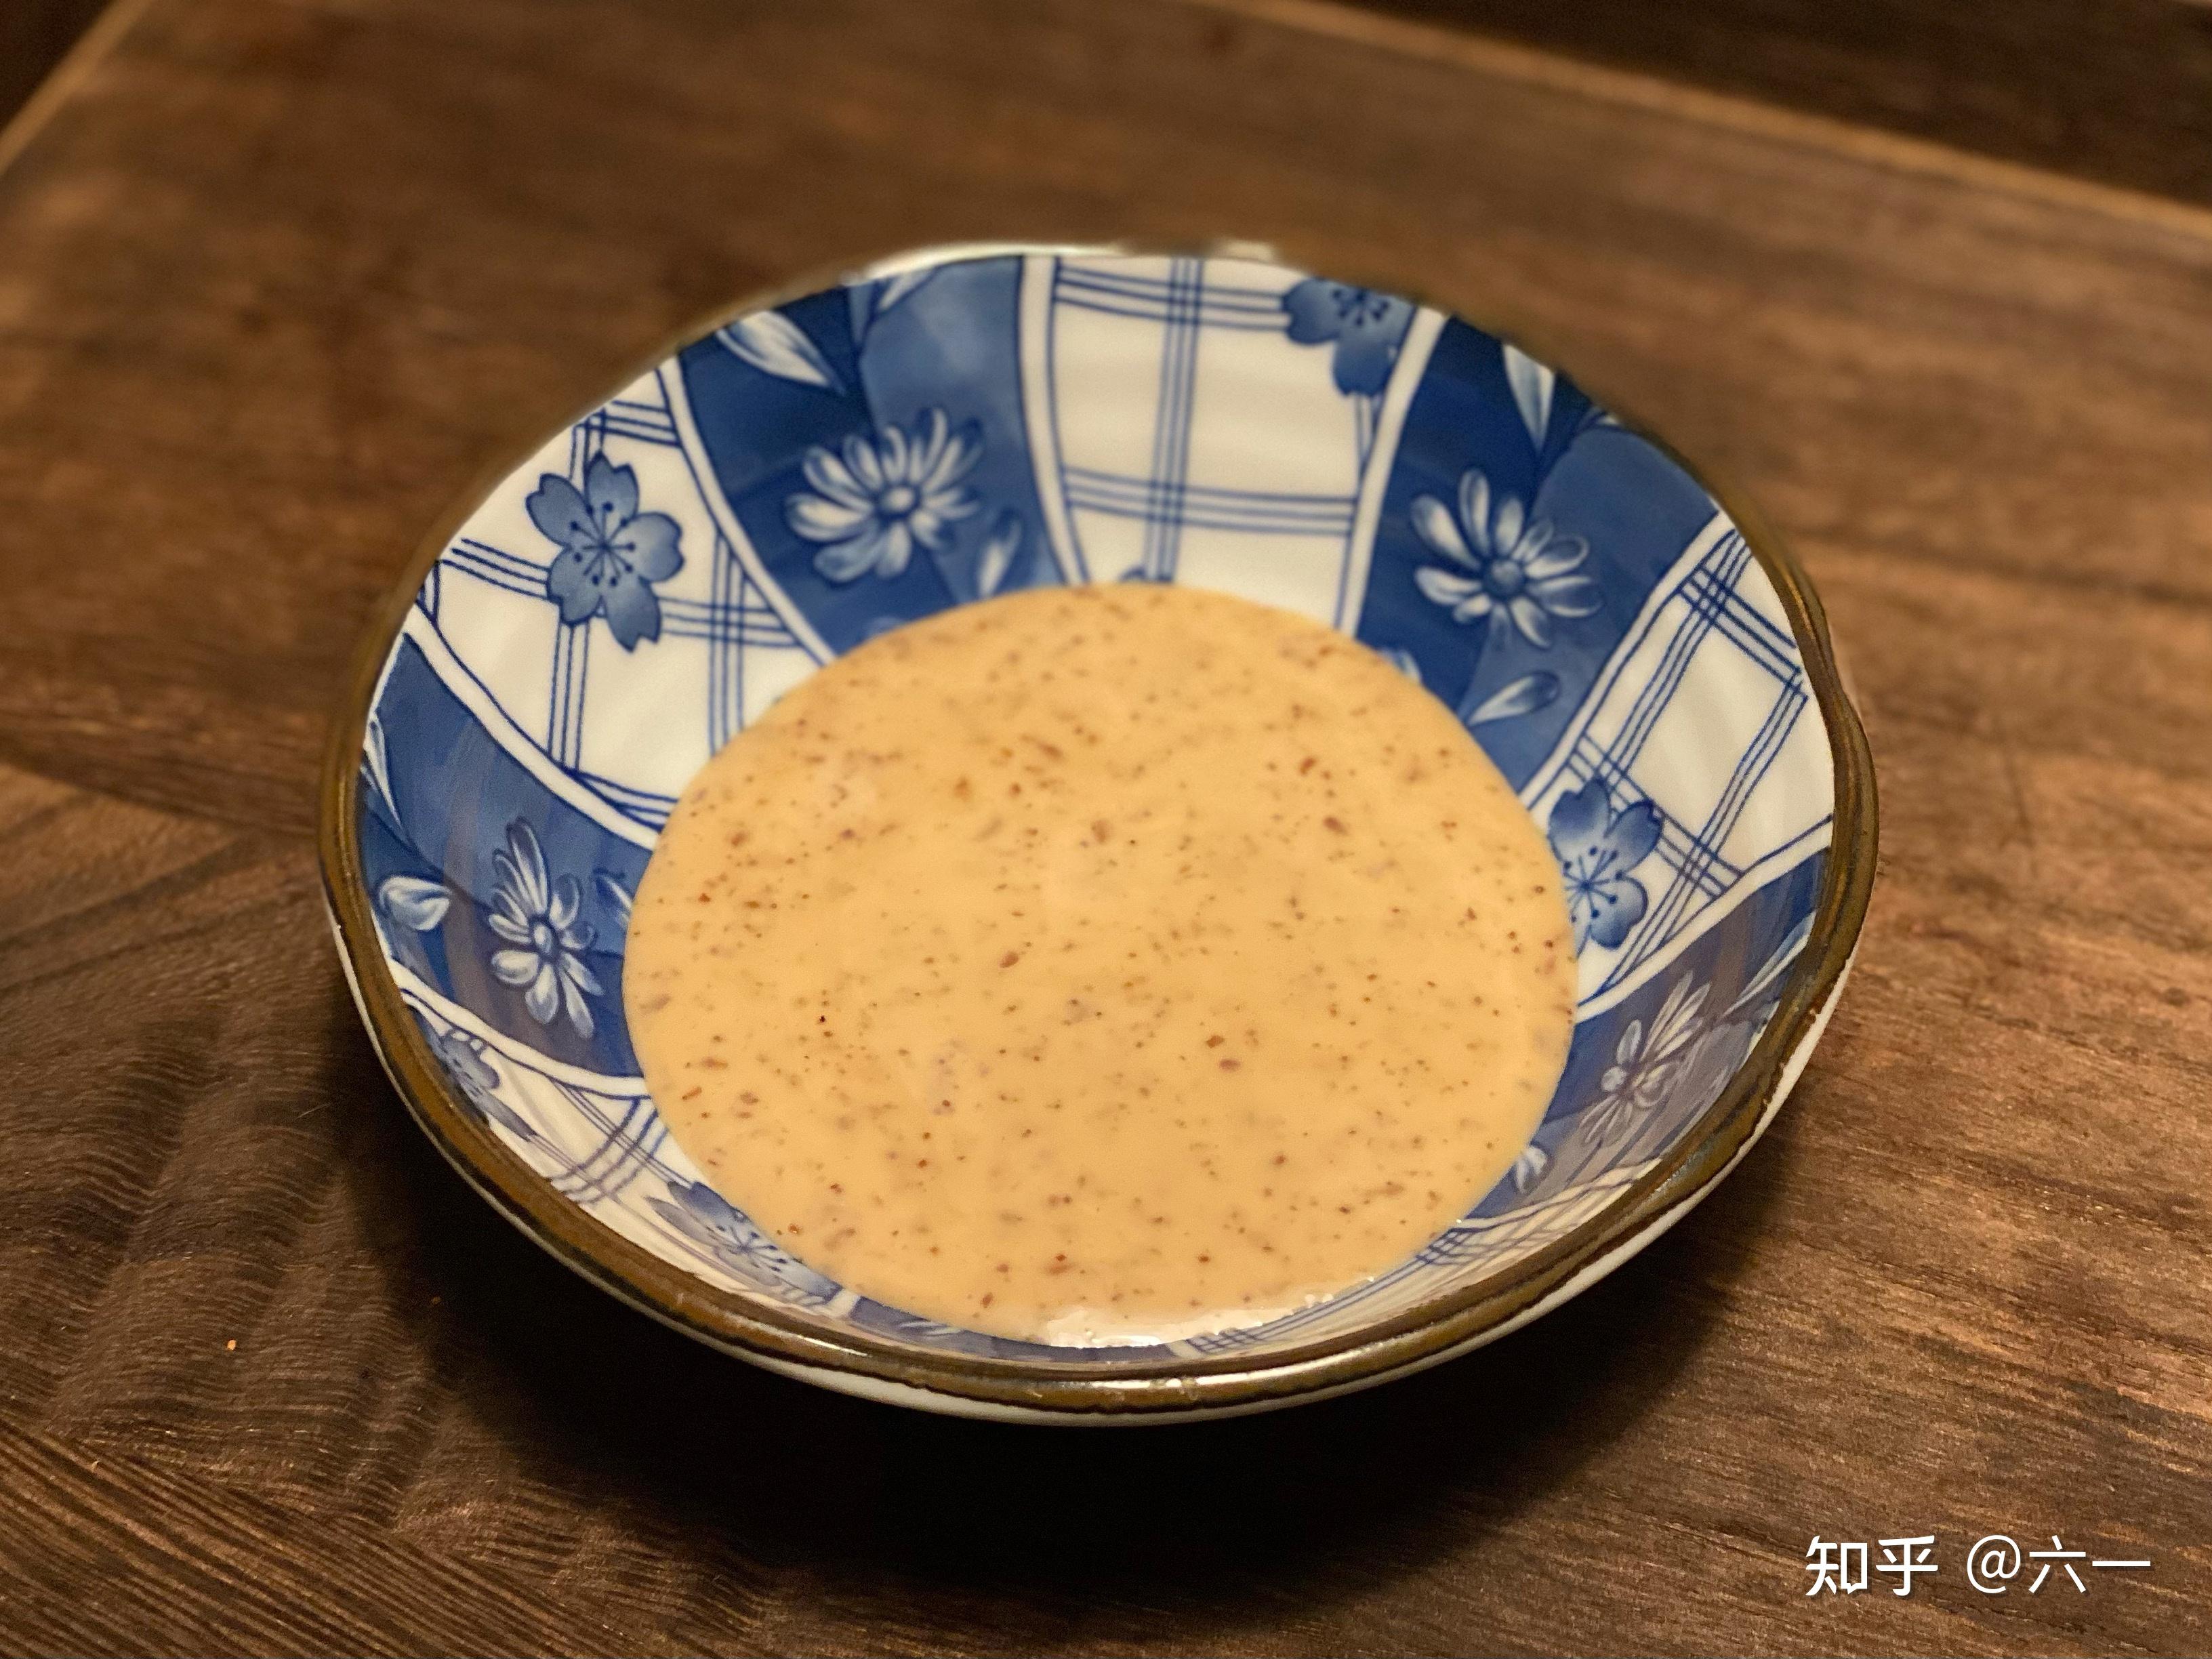 丘比沙拉酱_煎芝麻沙拉酱 什锦蔬菜 拌面蘸饺子1.5l - 阿里巴巴